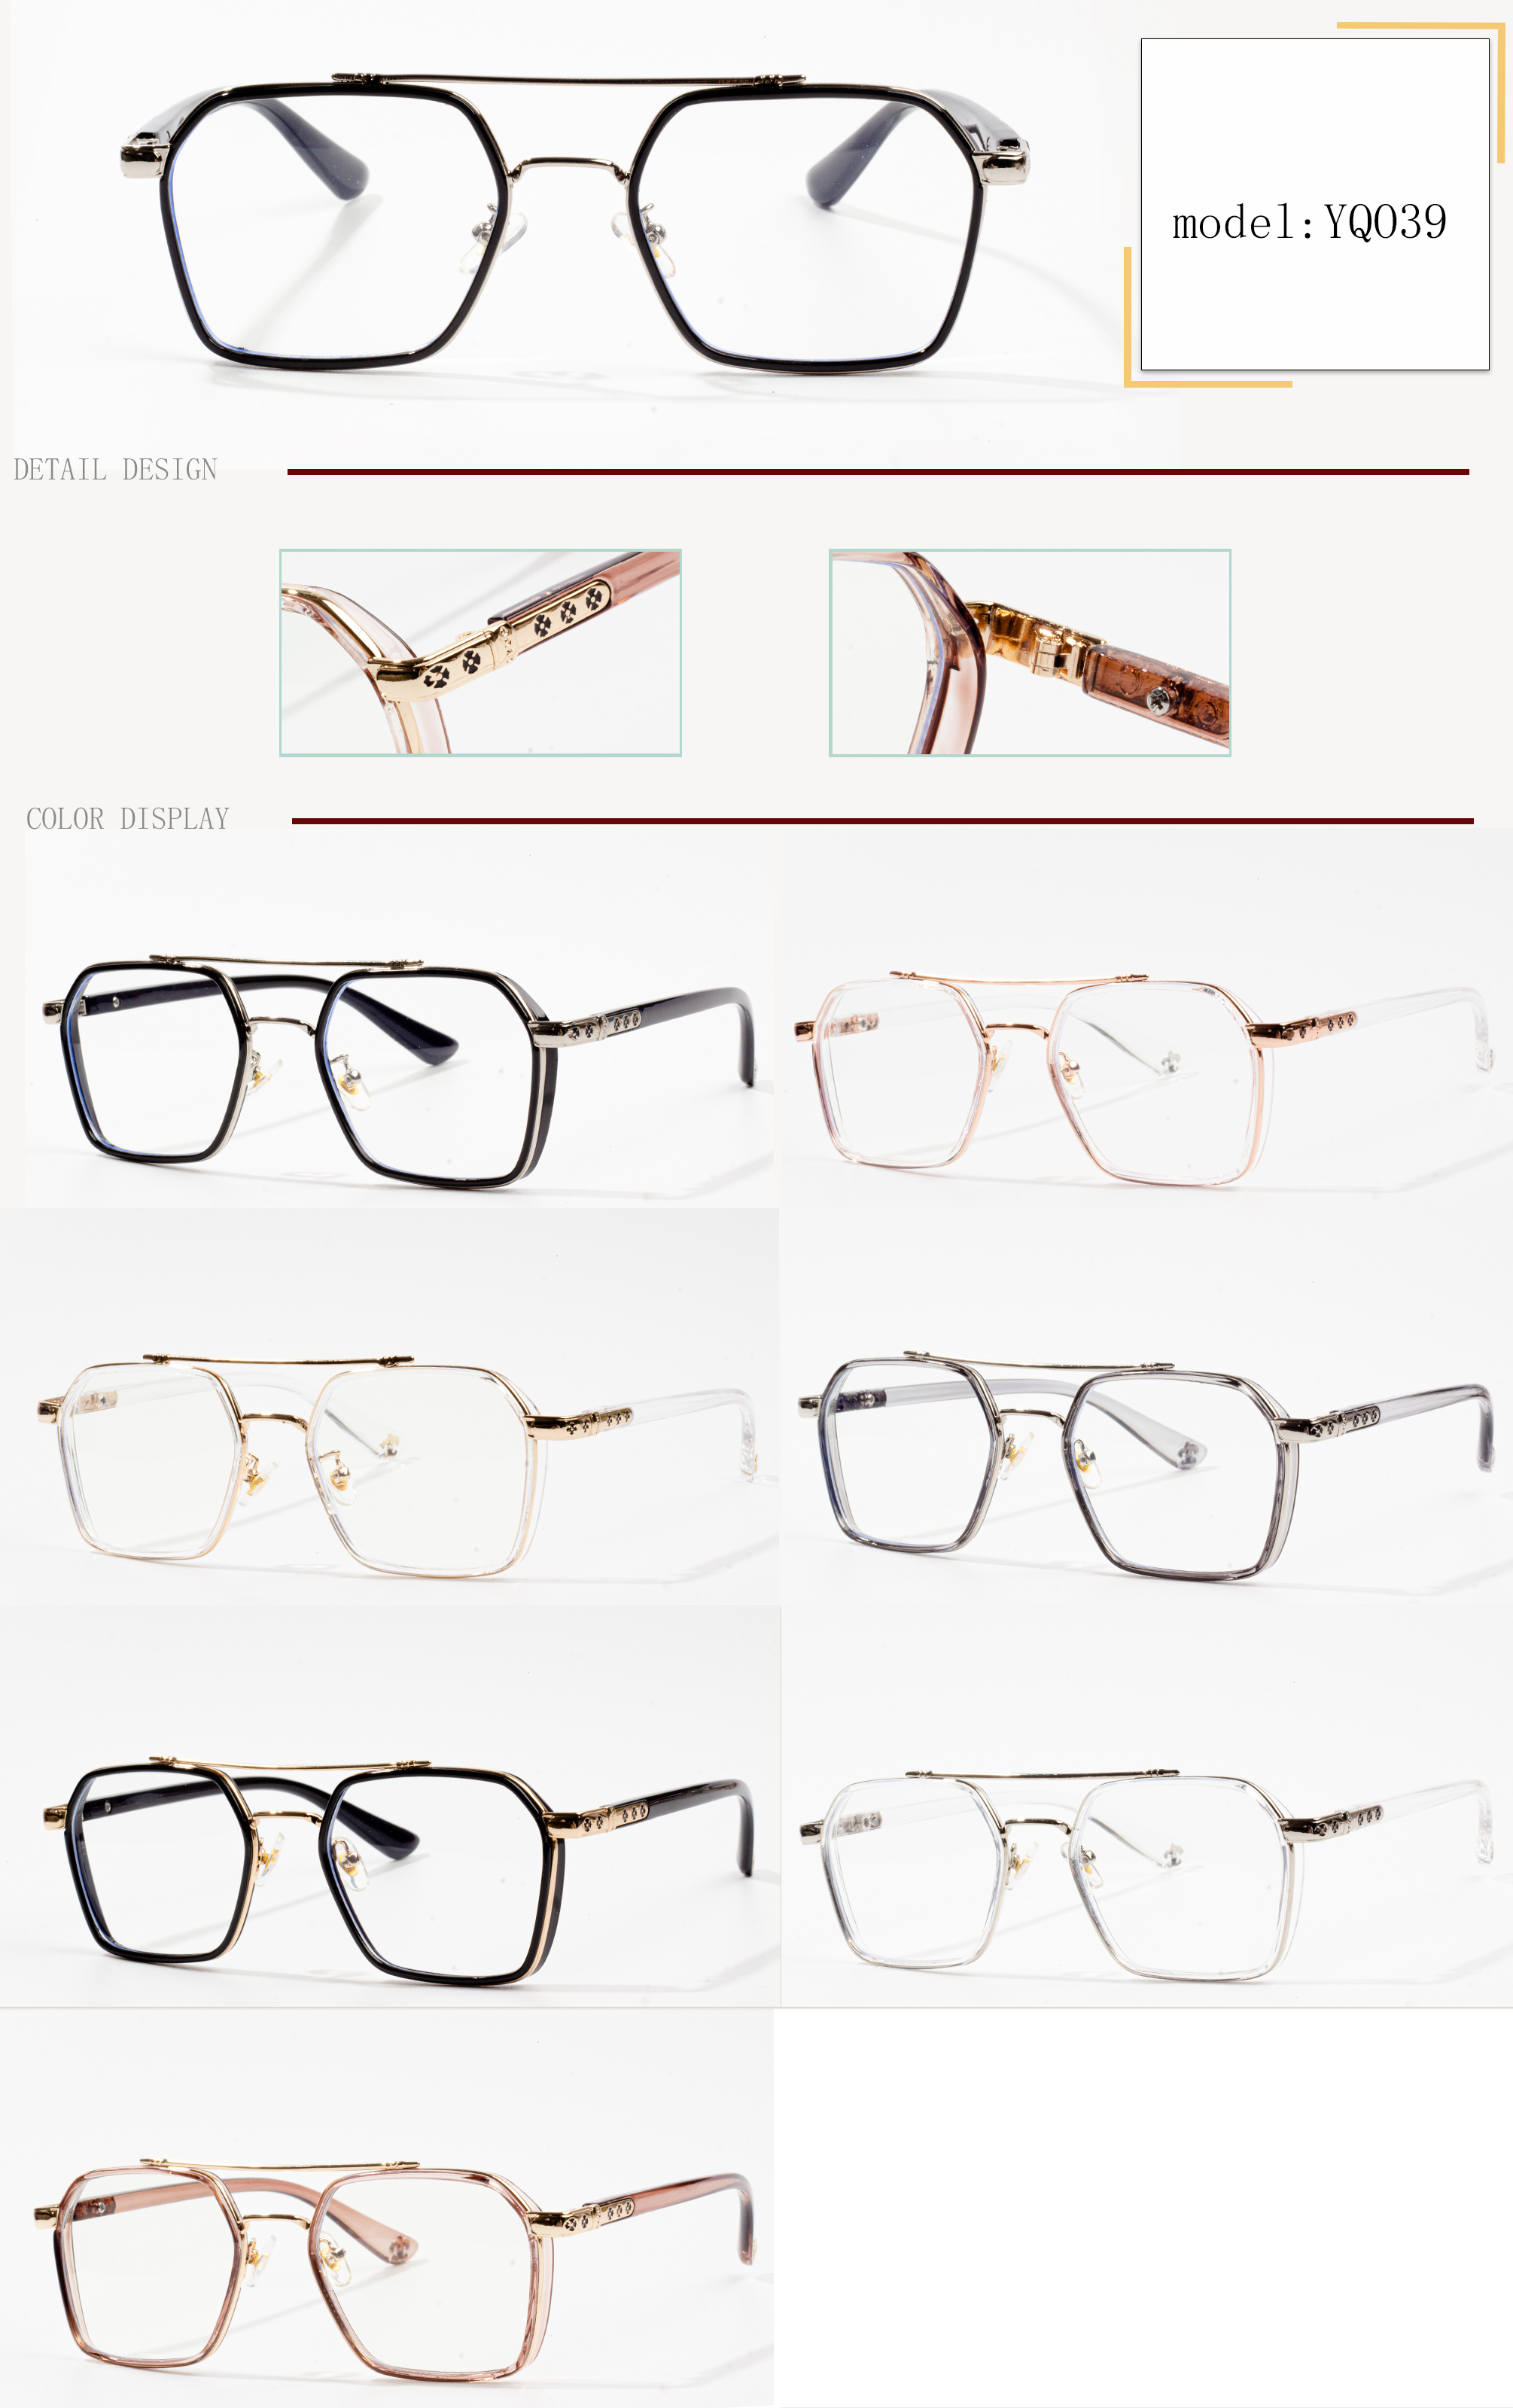 montature per occhiali su misura